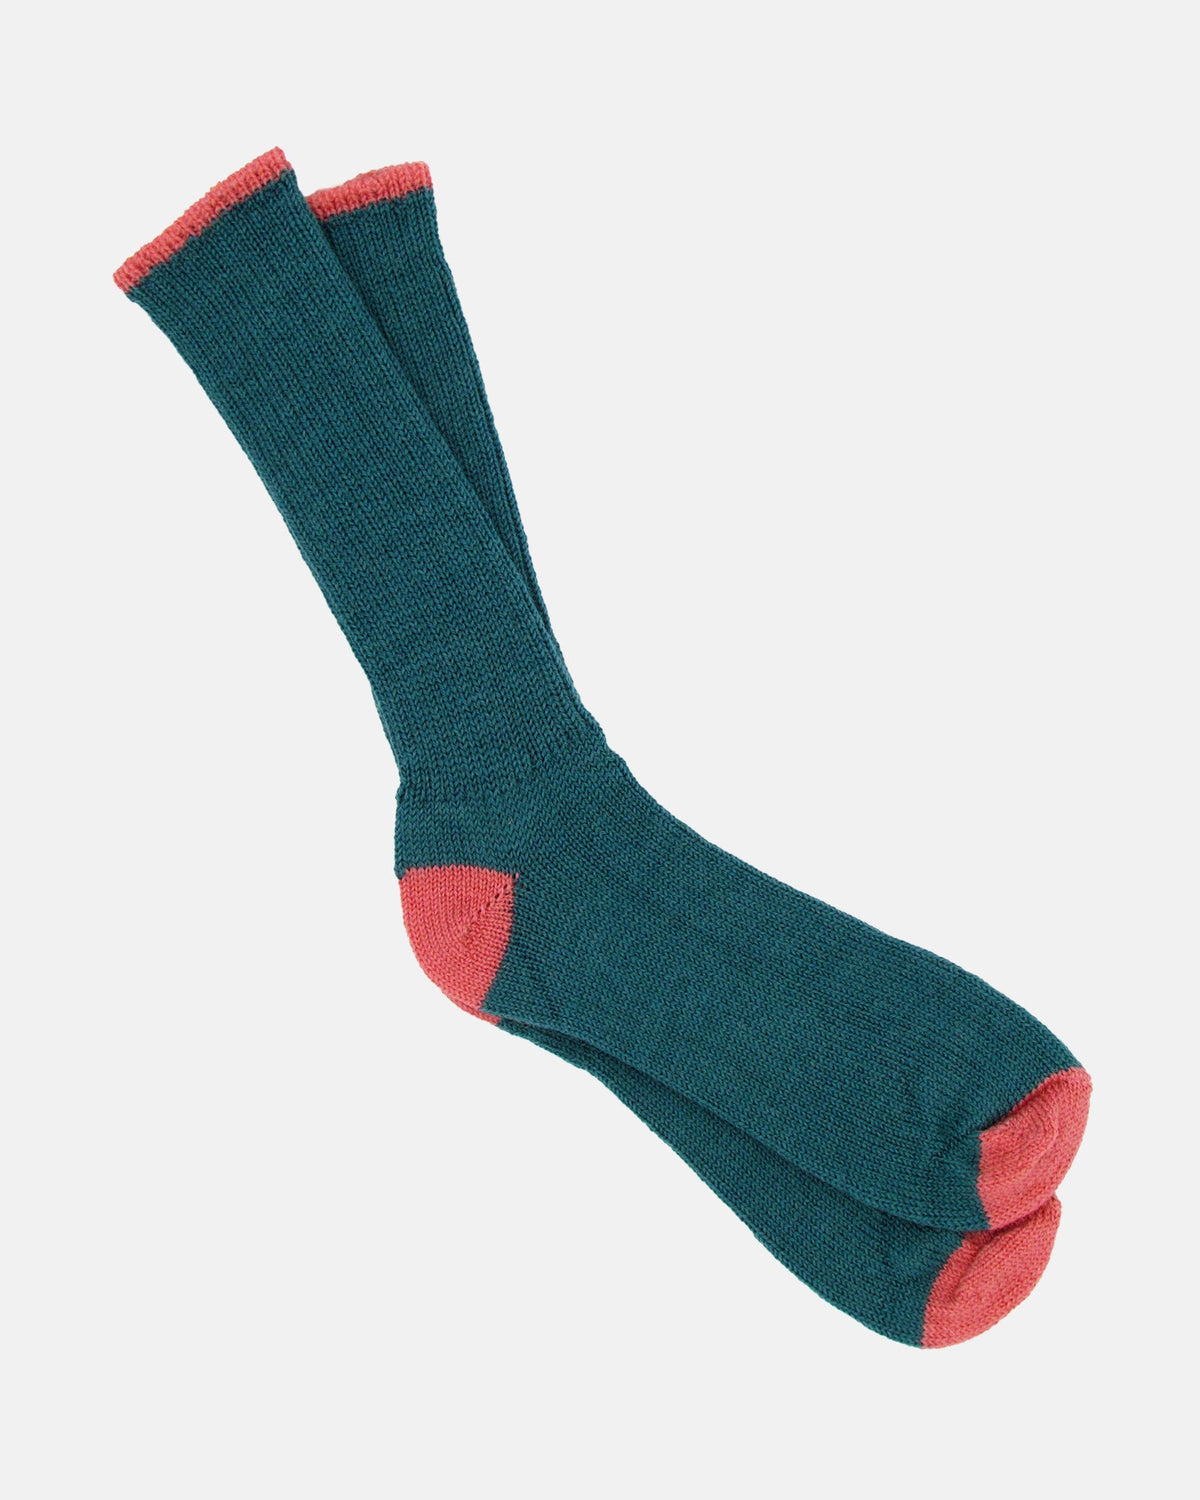 Soft Wool Socks - Aqua/Salmon - BRIT LOCKER